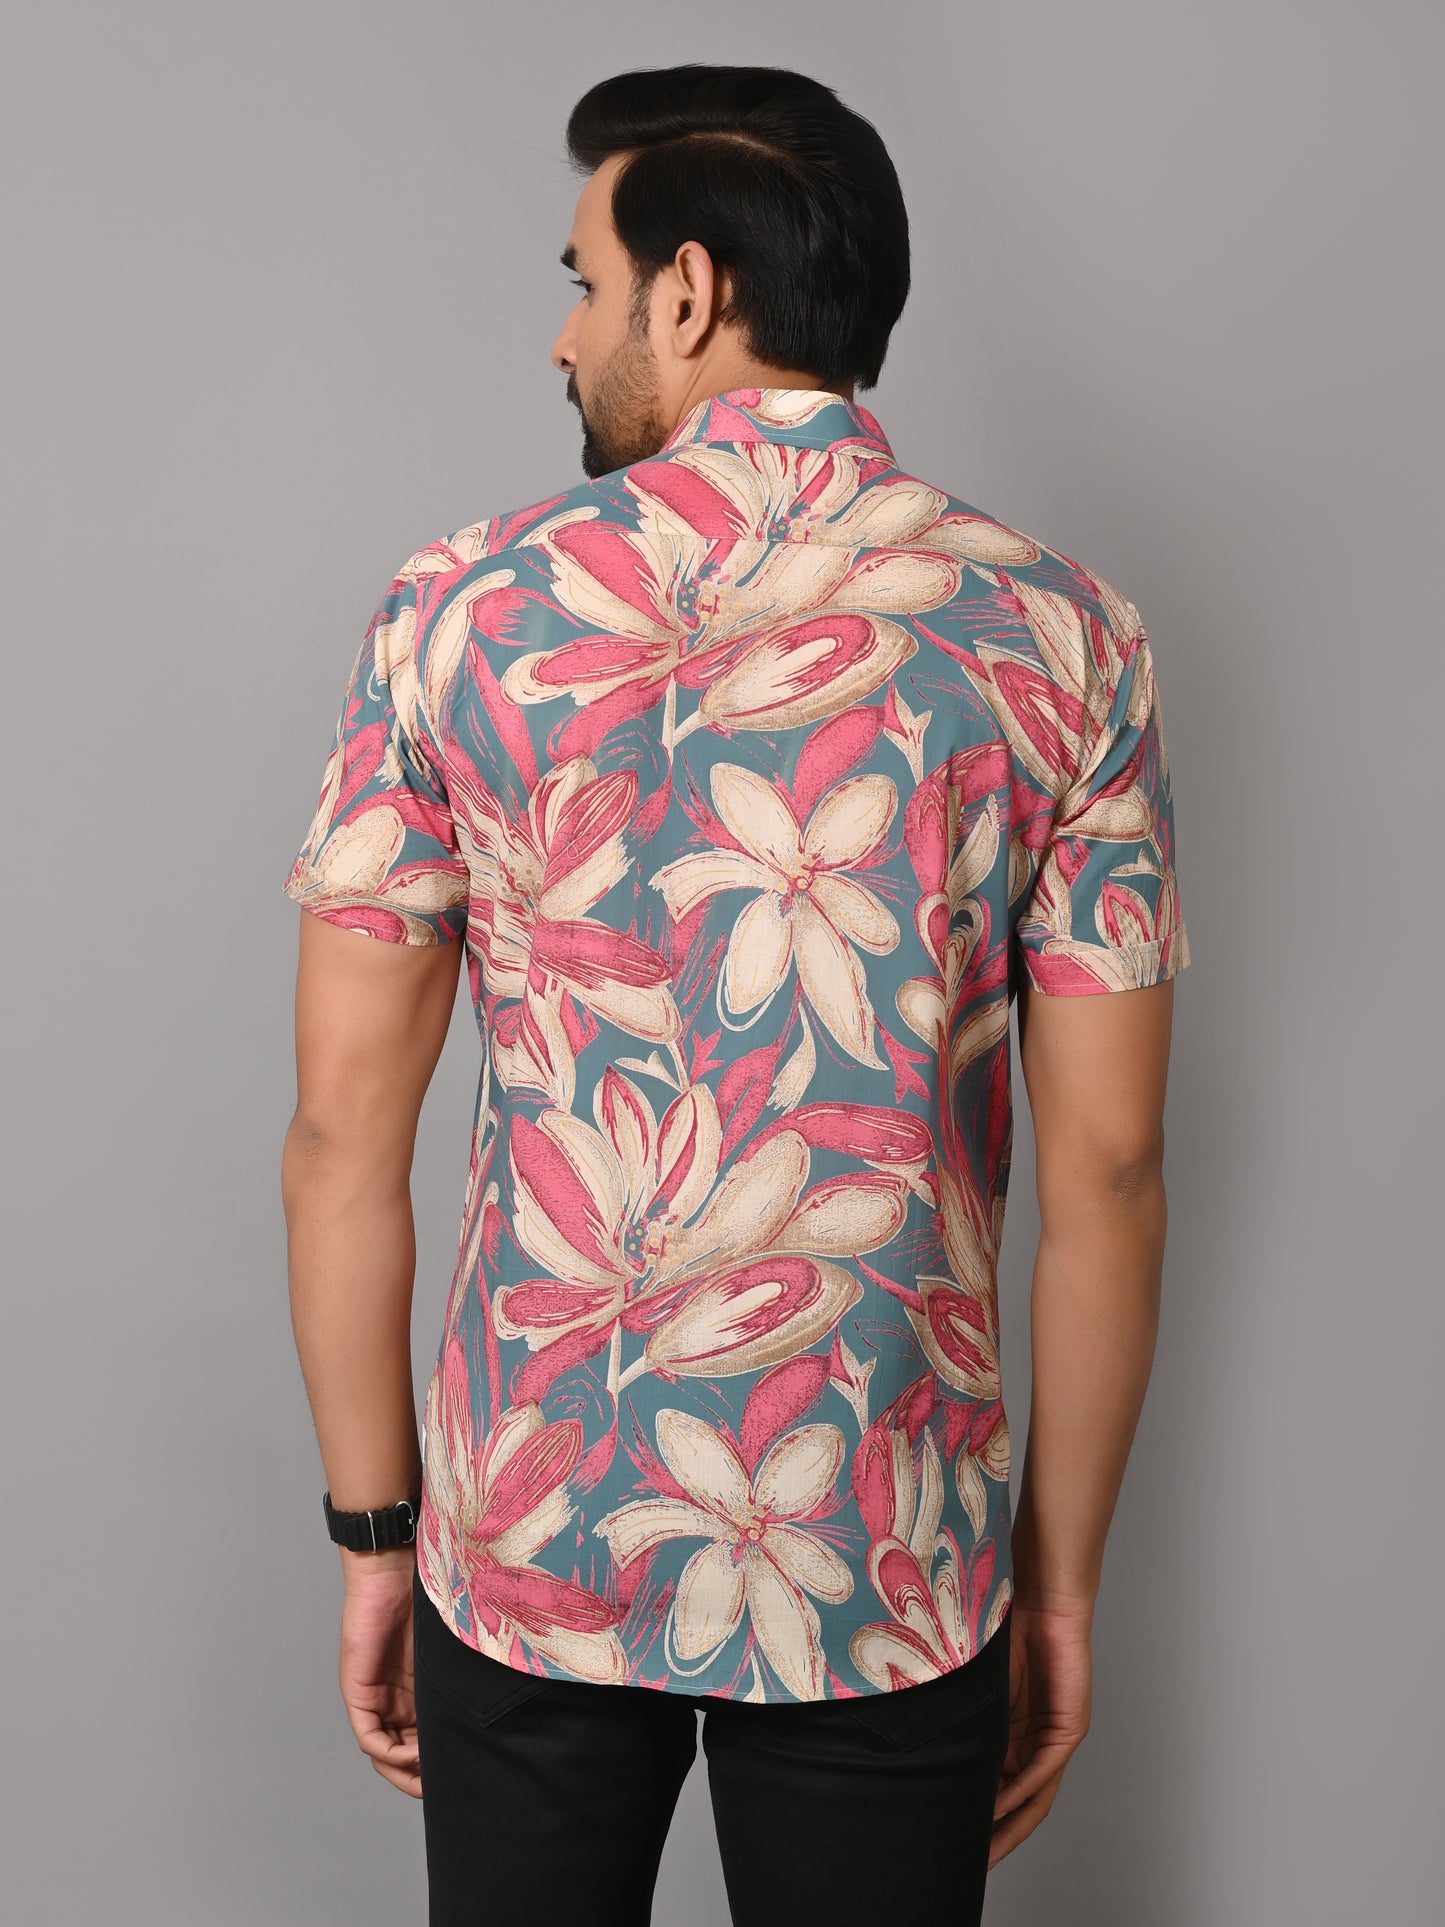 VJR Floral Pattern on Teal Base Premium Half Sleeves